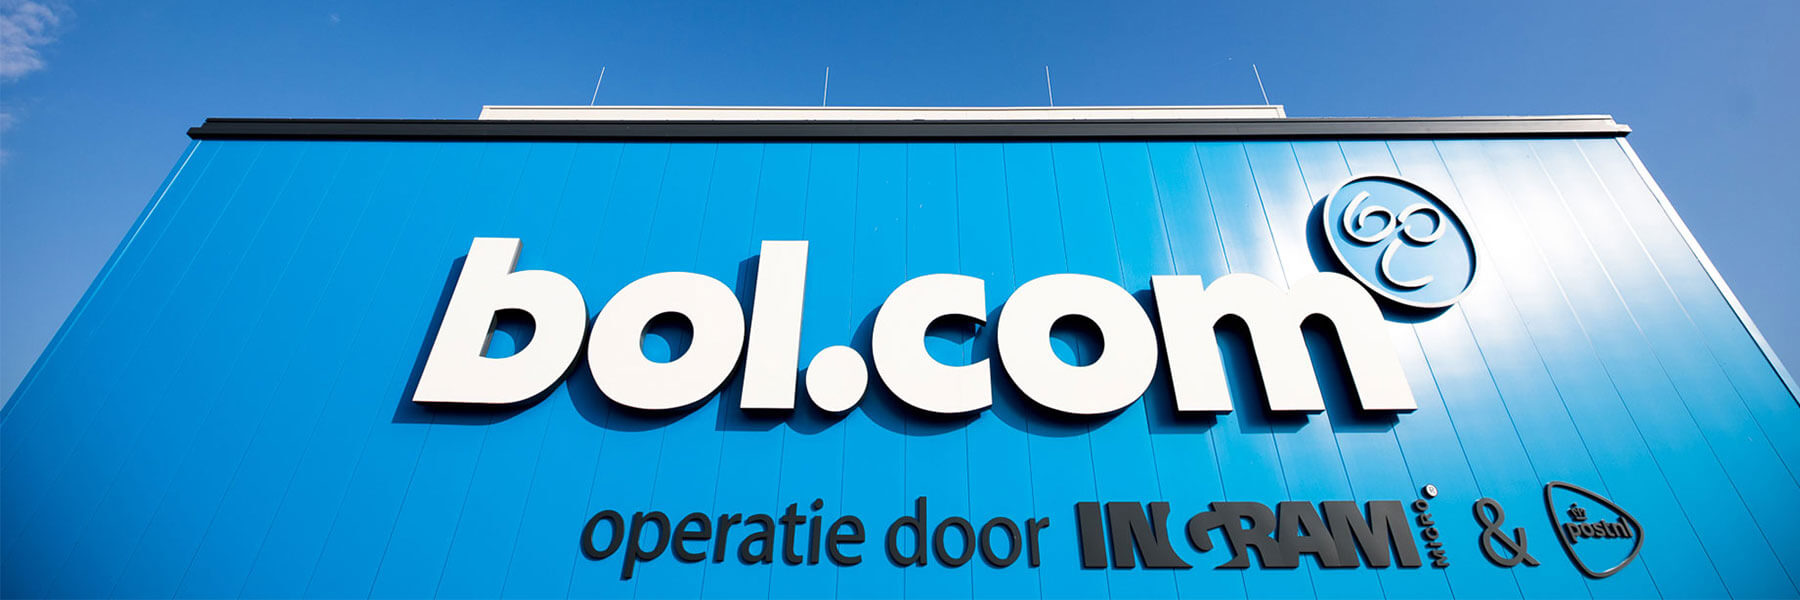 オランダのネットショッピングで最安値を狙う方法 オランダで生きていく